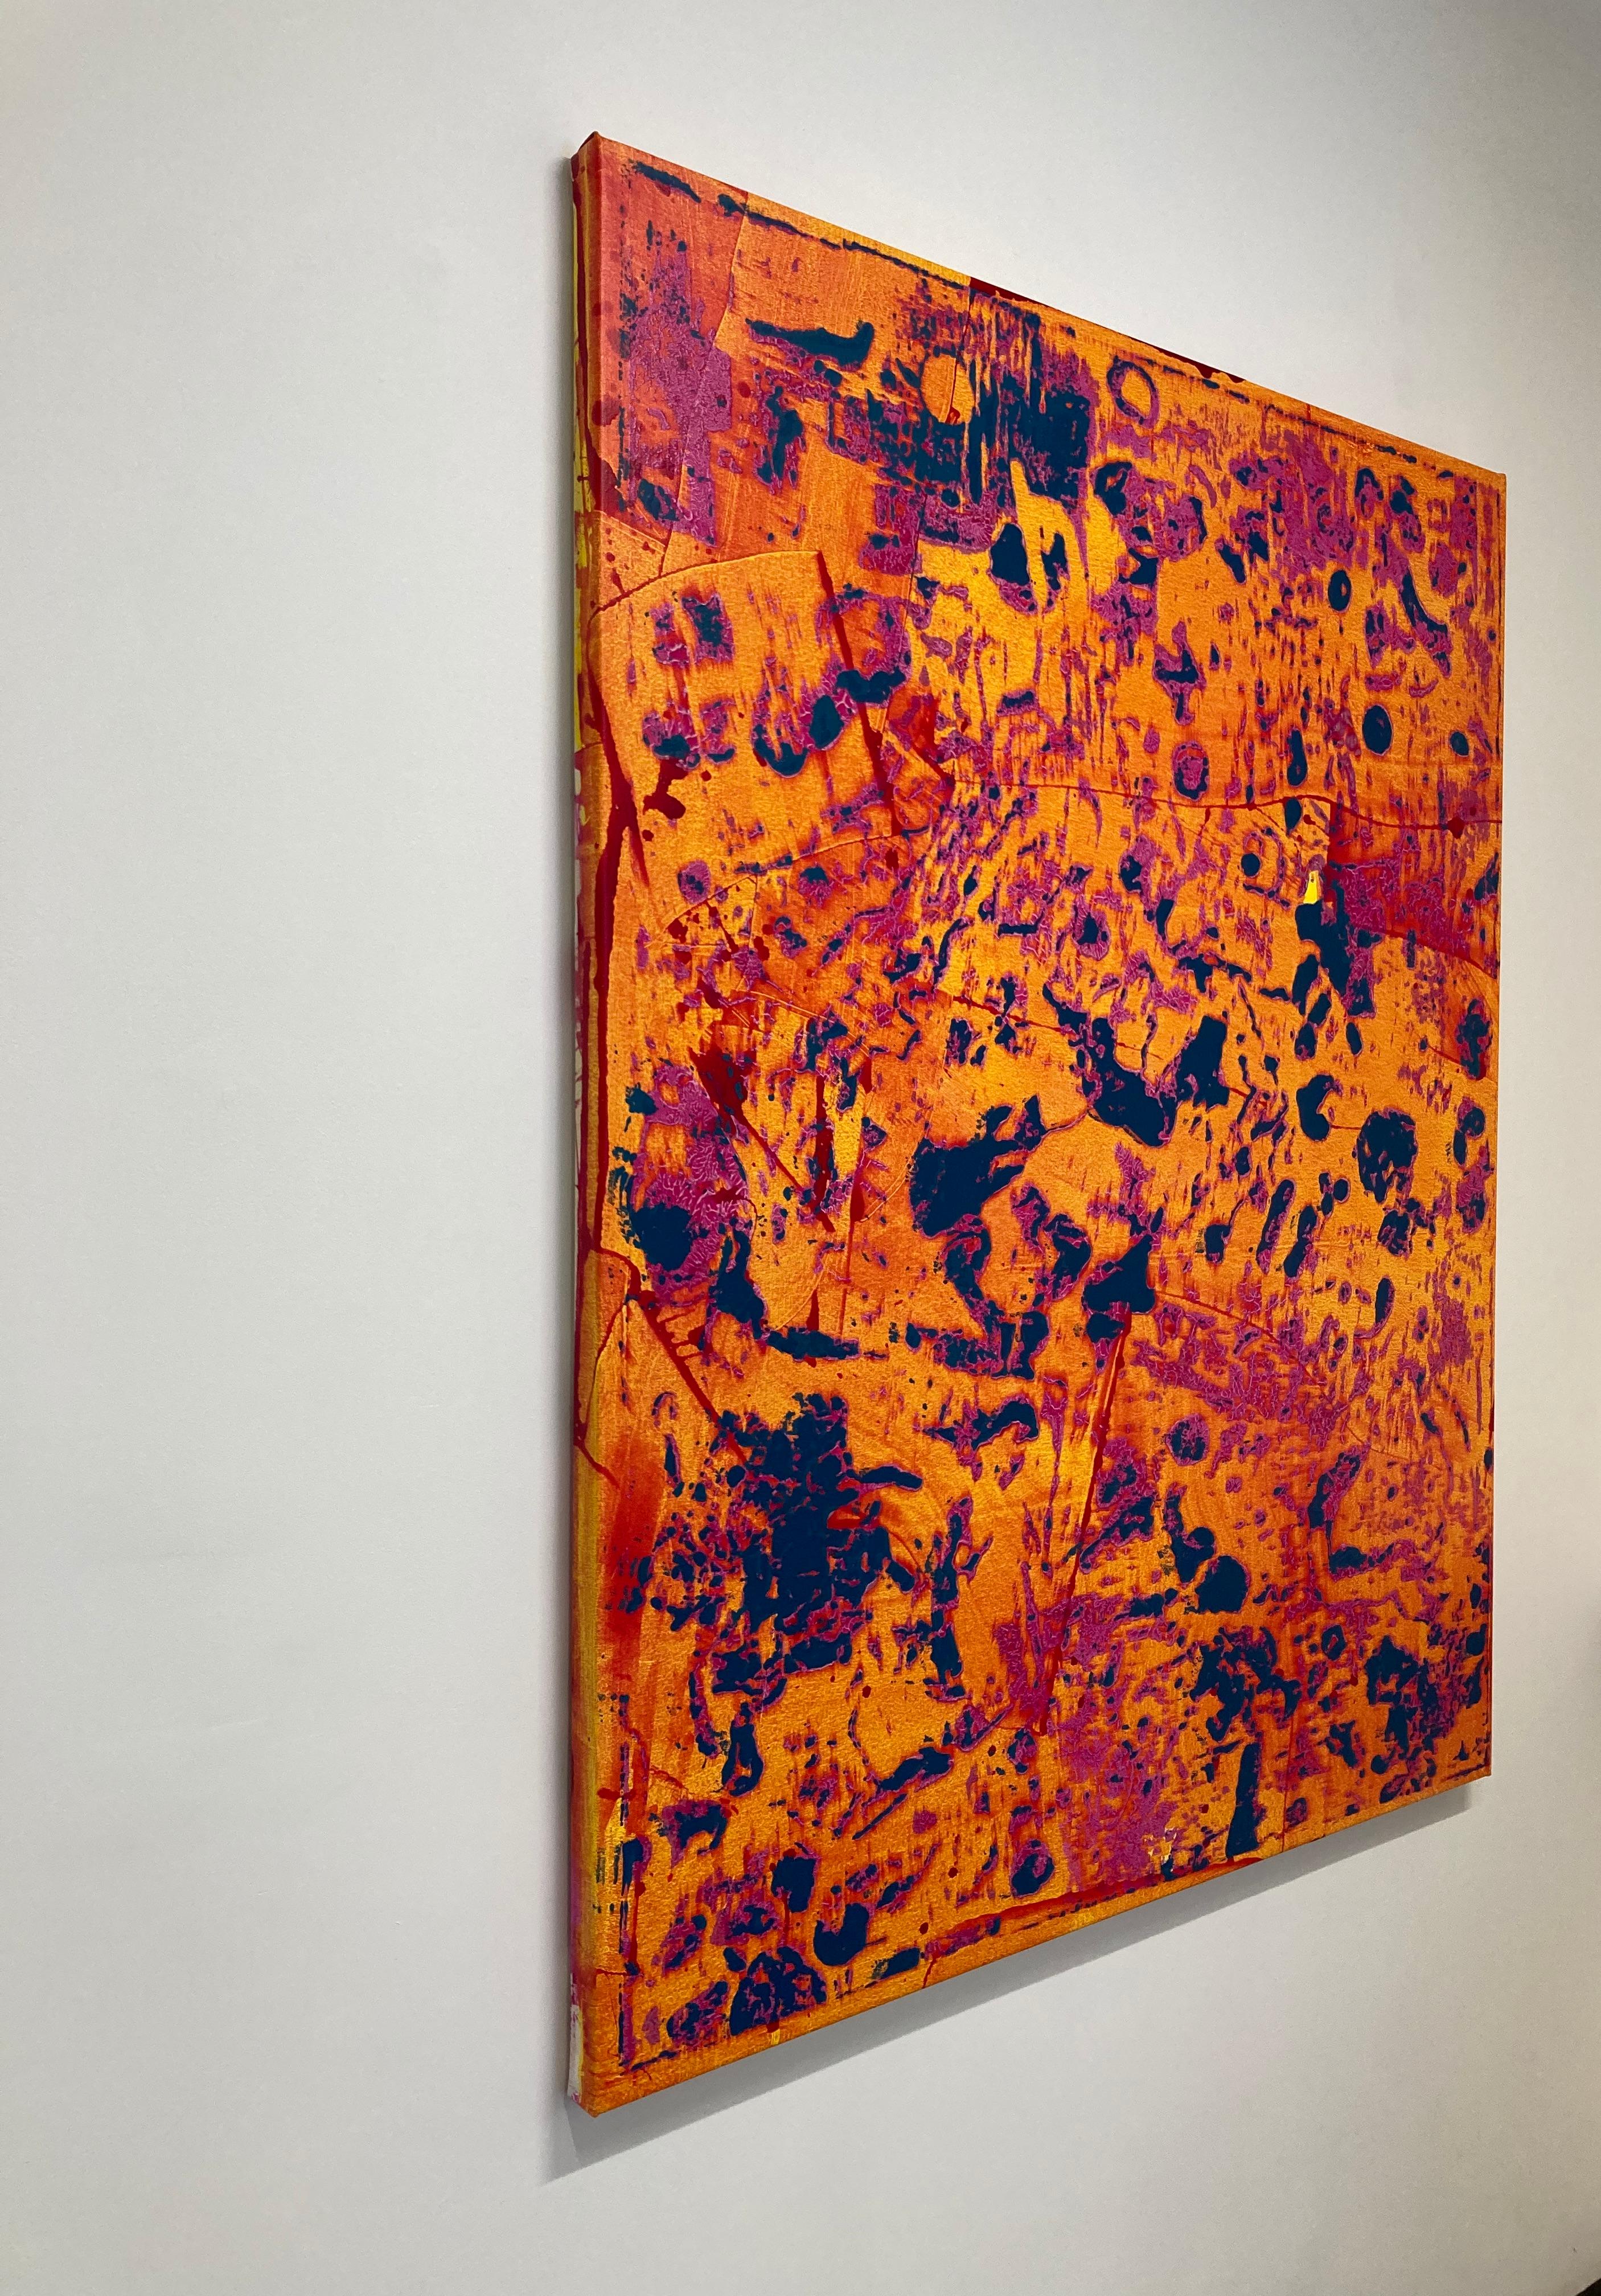 Großes vertikales abstraktes Gemälde in leuchtendem Orange, Gelb, Rosa und Marineblau, P20-0105 (Rot), Abstract Painting, von Stephen Maine